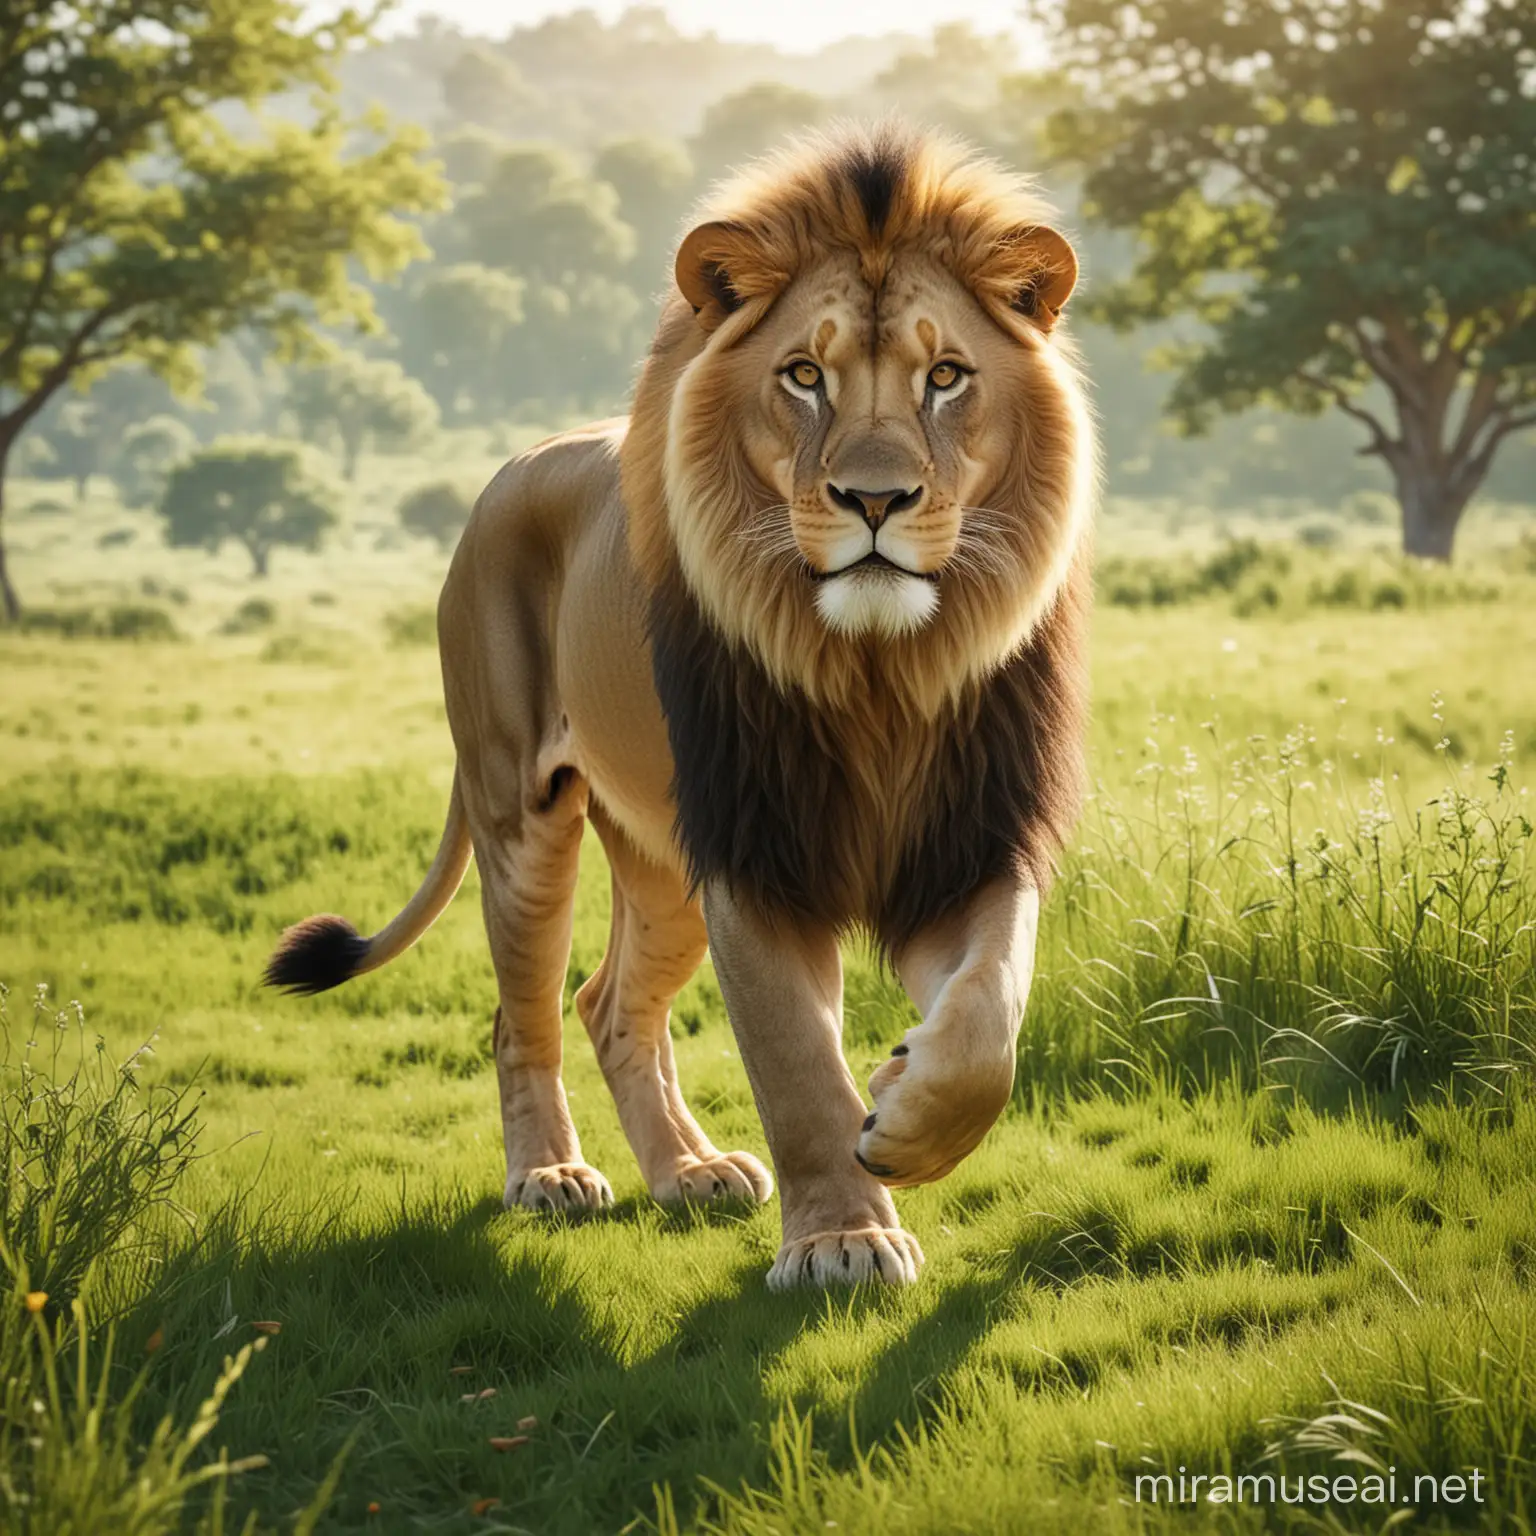 Majestic Lion Walking on Sunlit Meadow